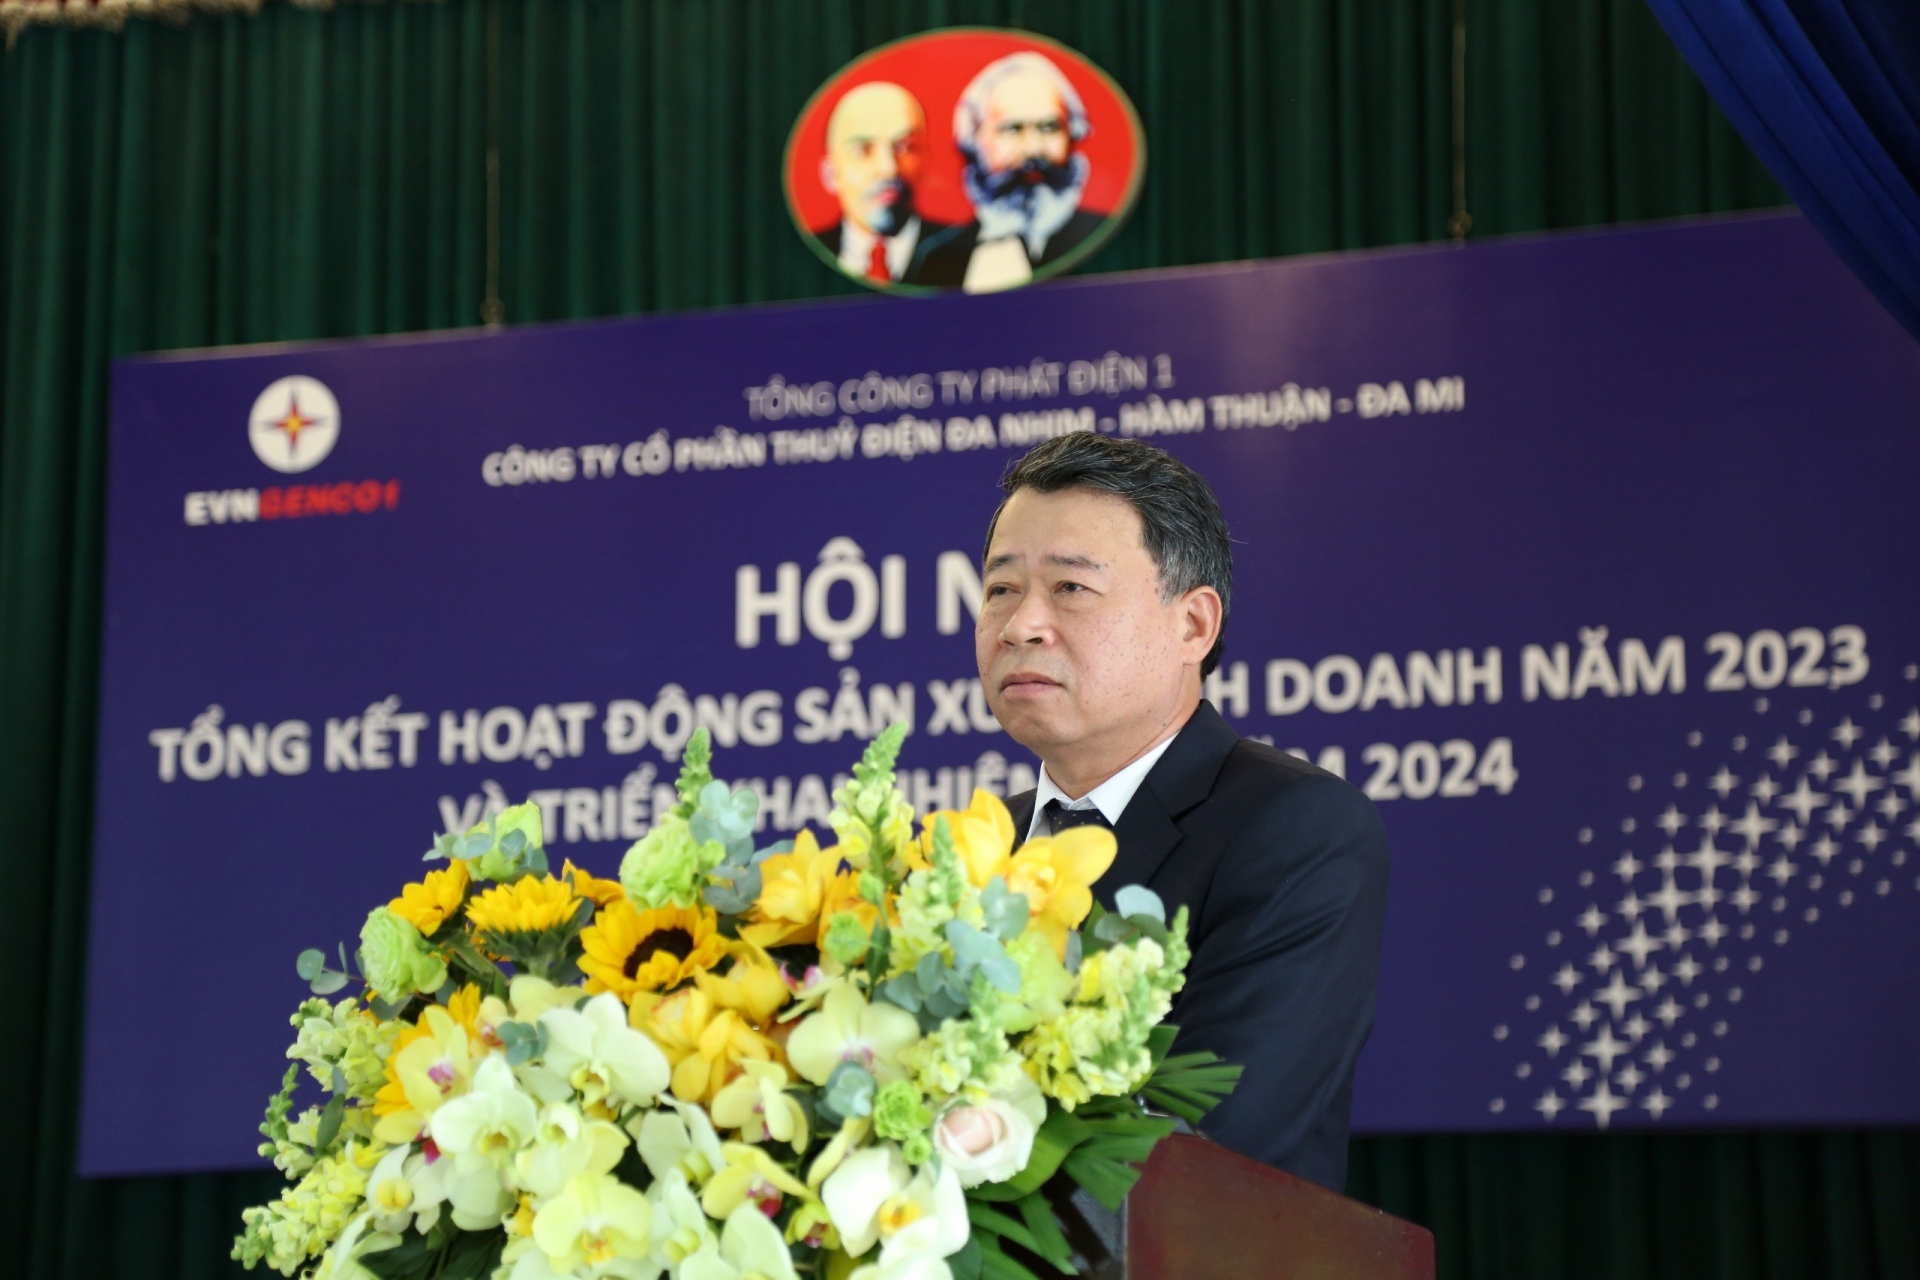 Ông Phạm Viết Hùng - Thành viên Hội đồng thành viên EVNGENCO1 phát biểu tại Hội nghị